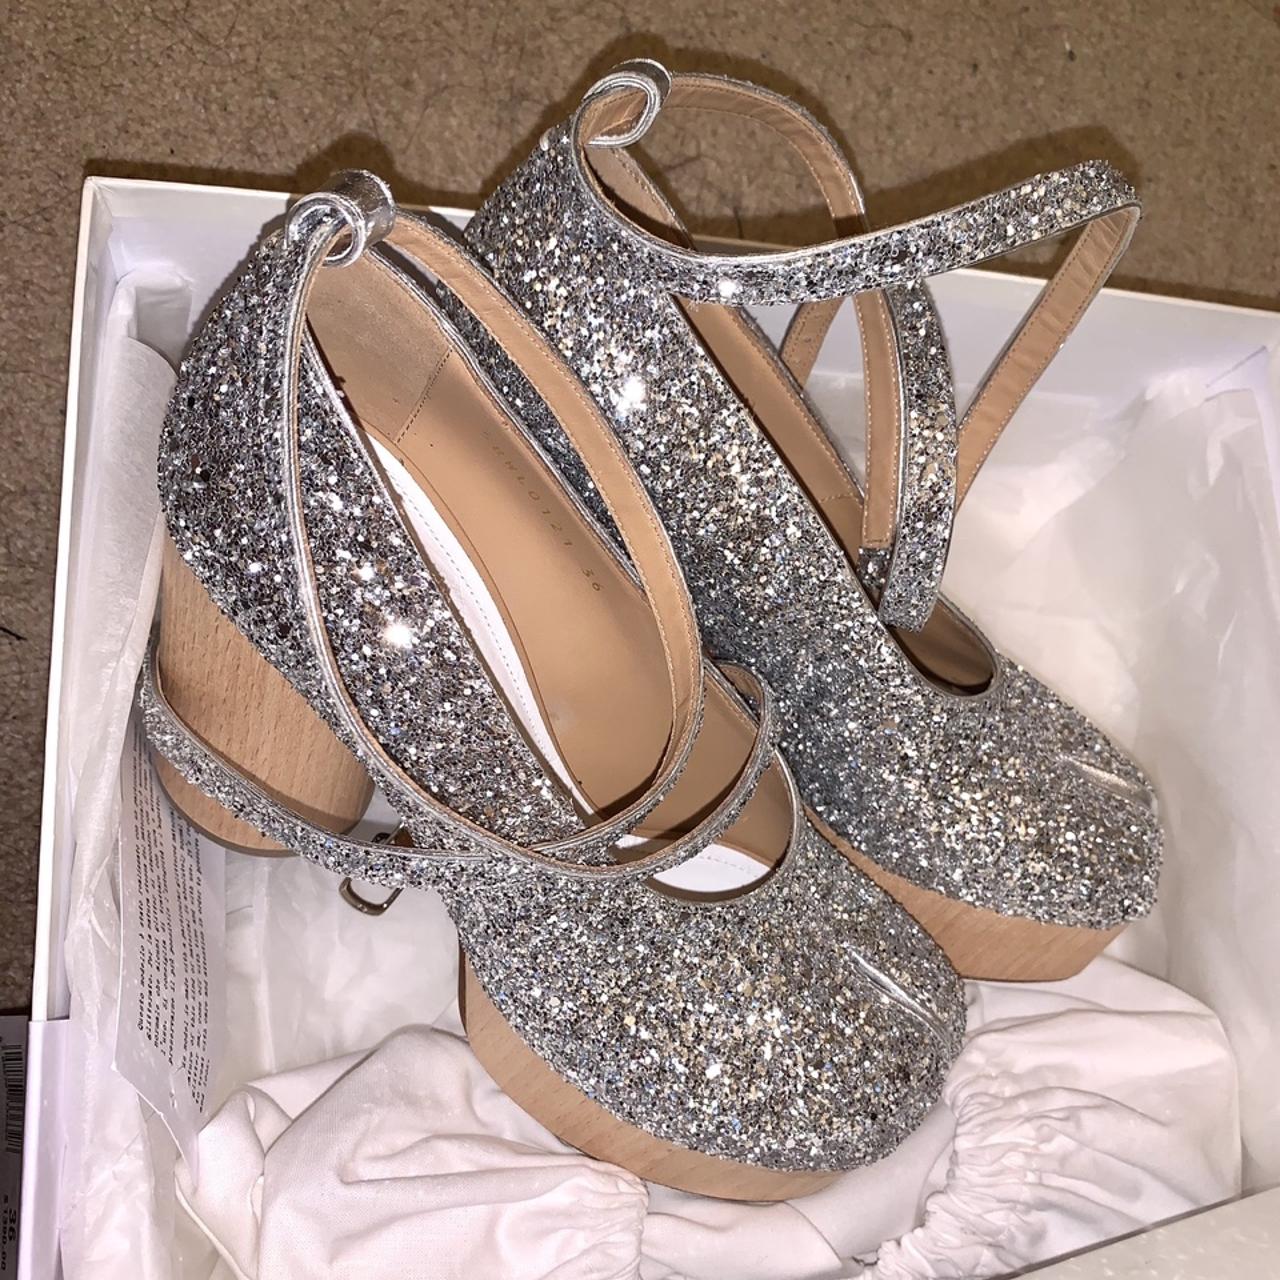 Mansion Margiela Tabi Shoes Amazing silver glitter - Depop